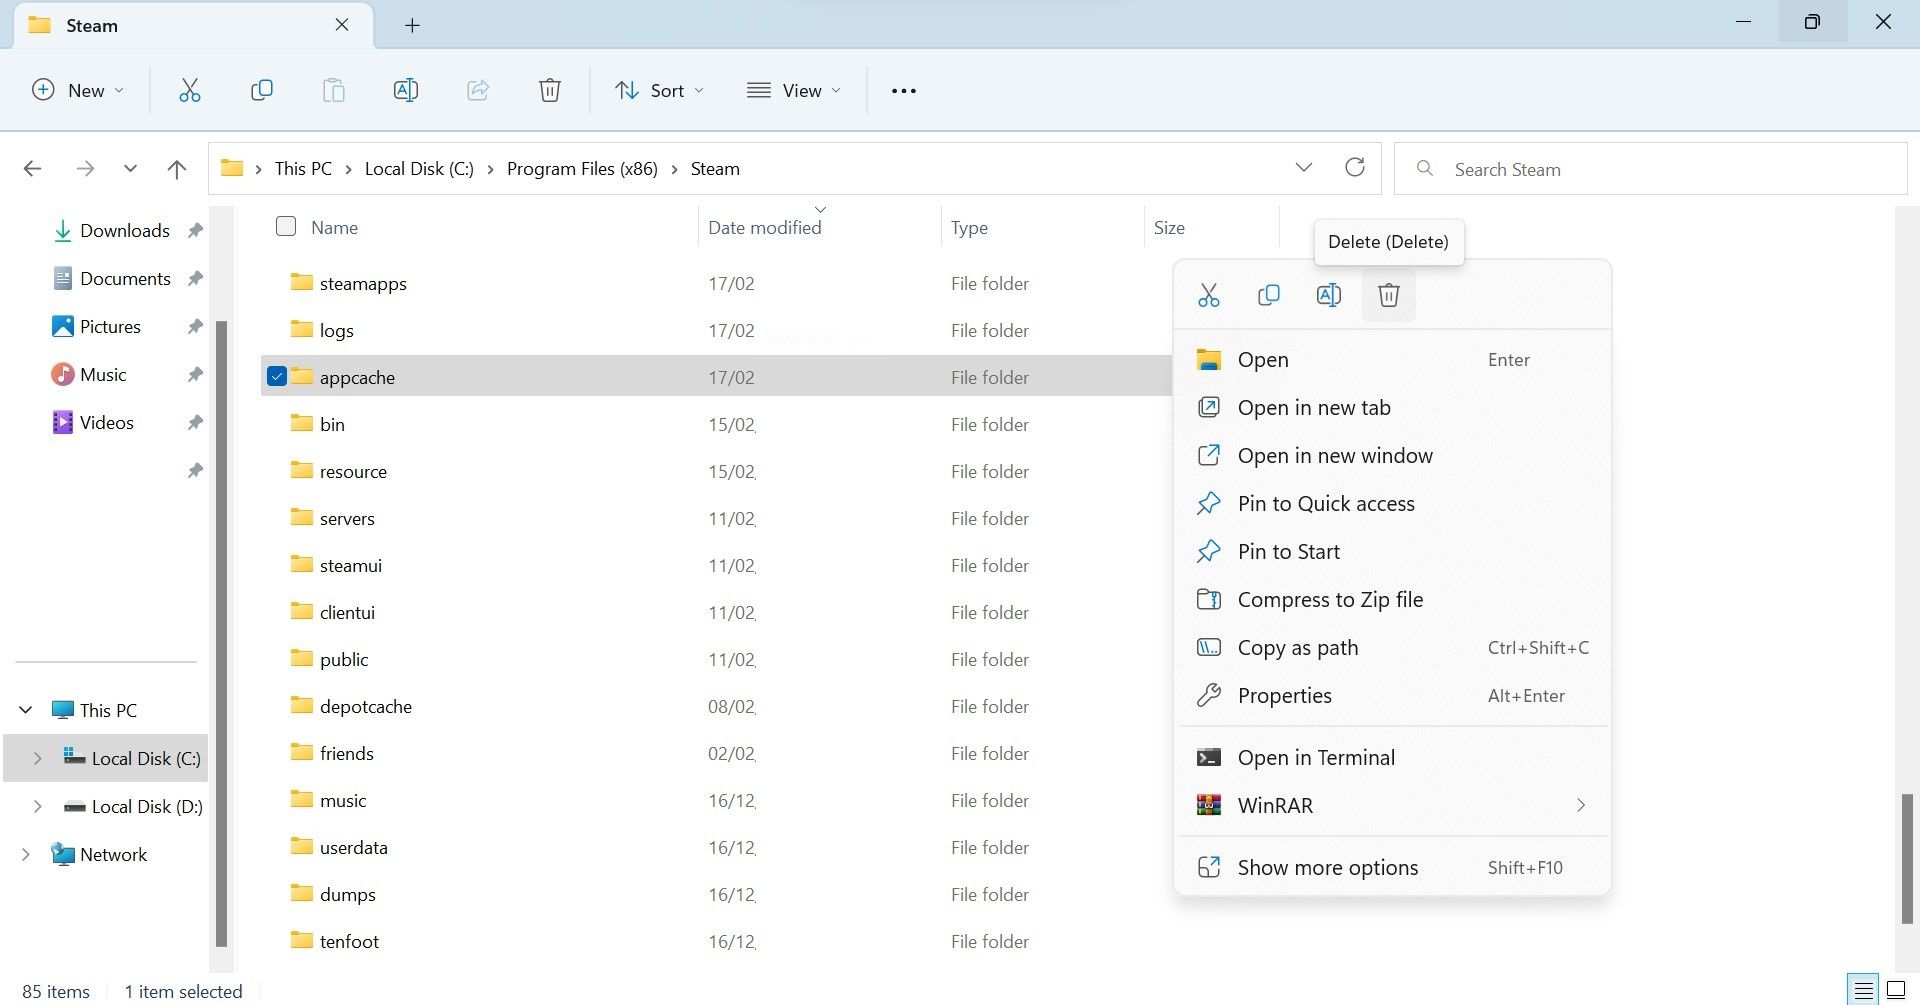 Delete the Appcache Folder of Steam in Windows File Explorer